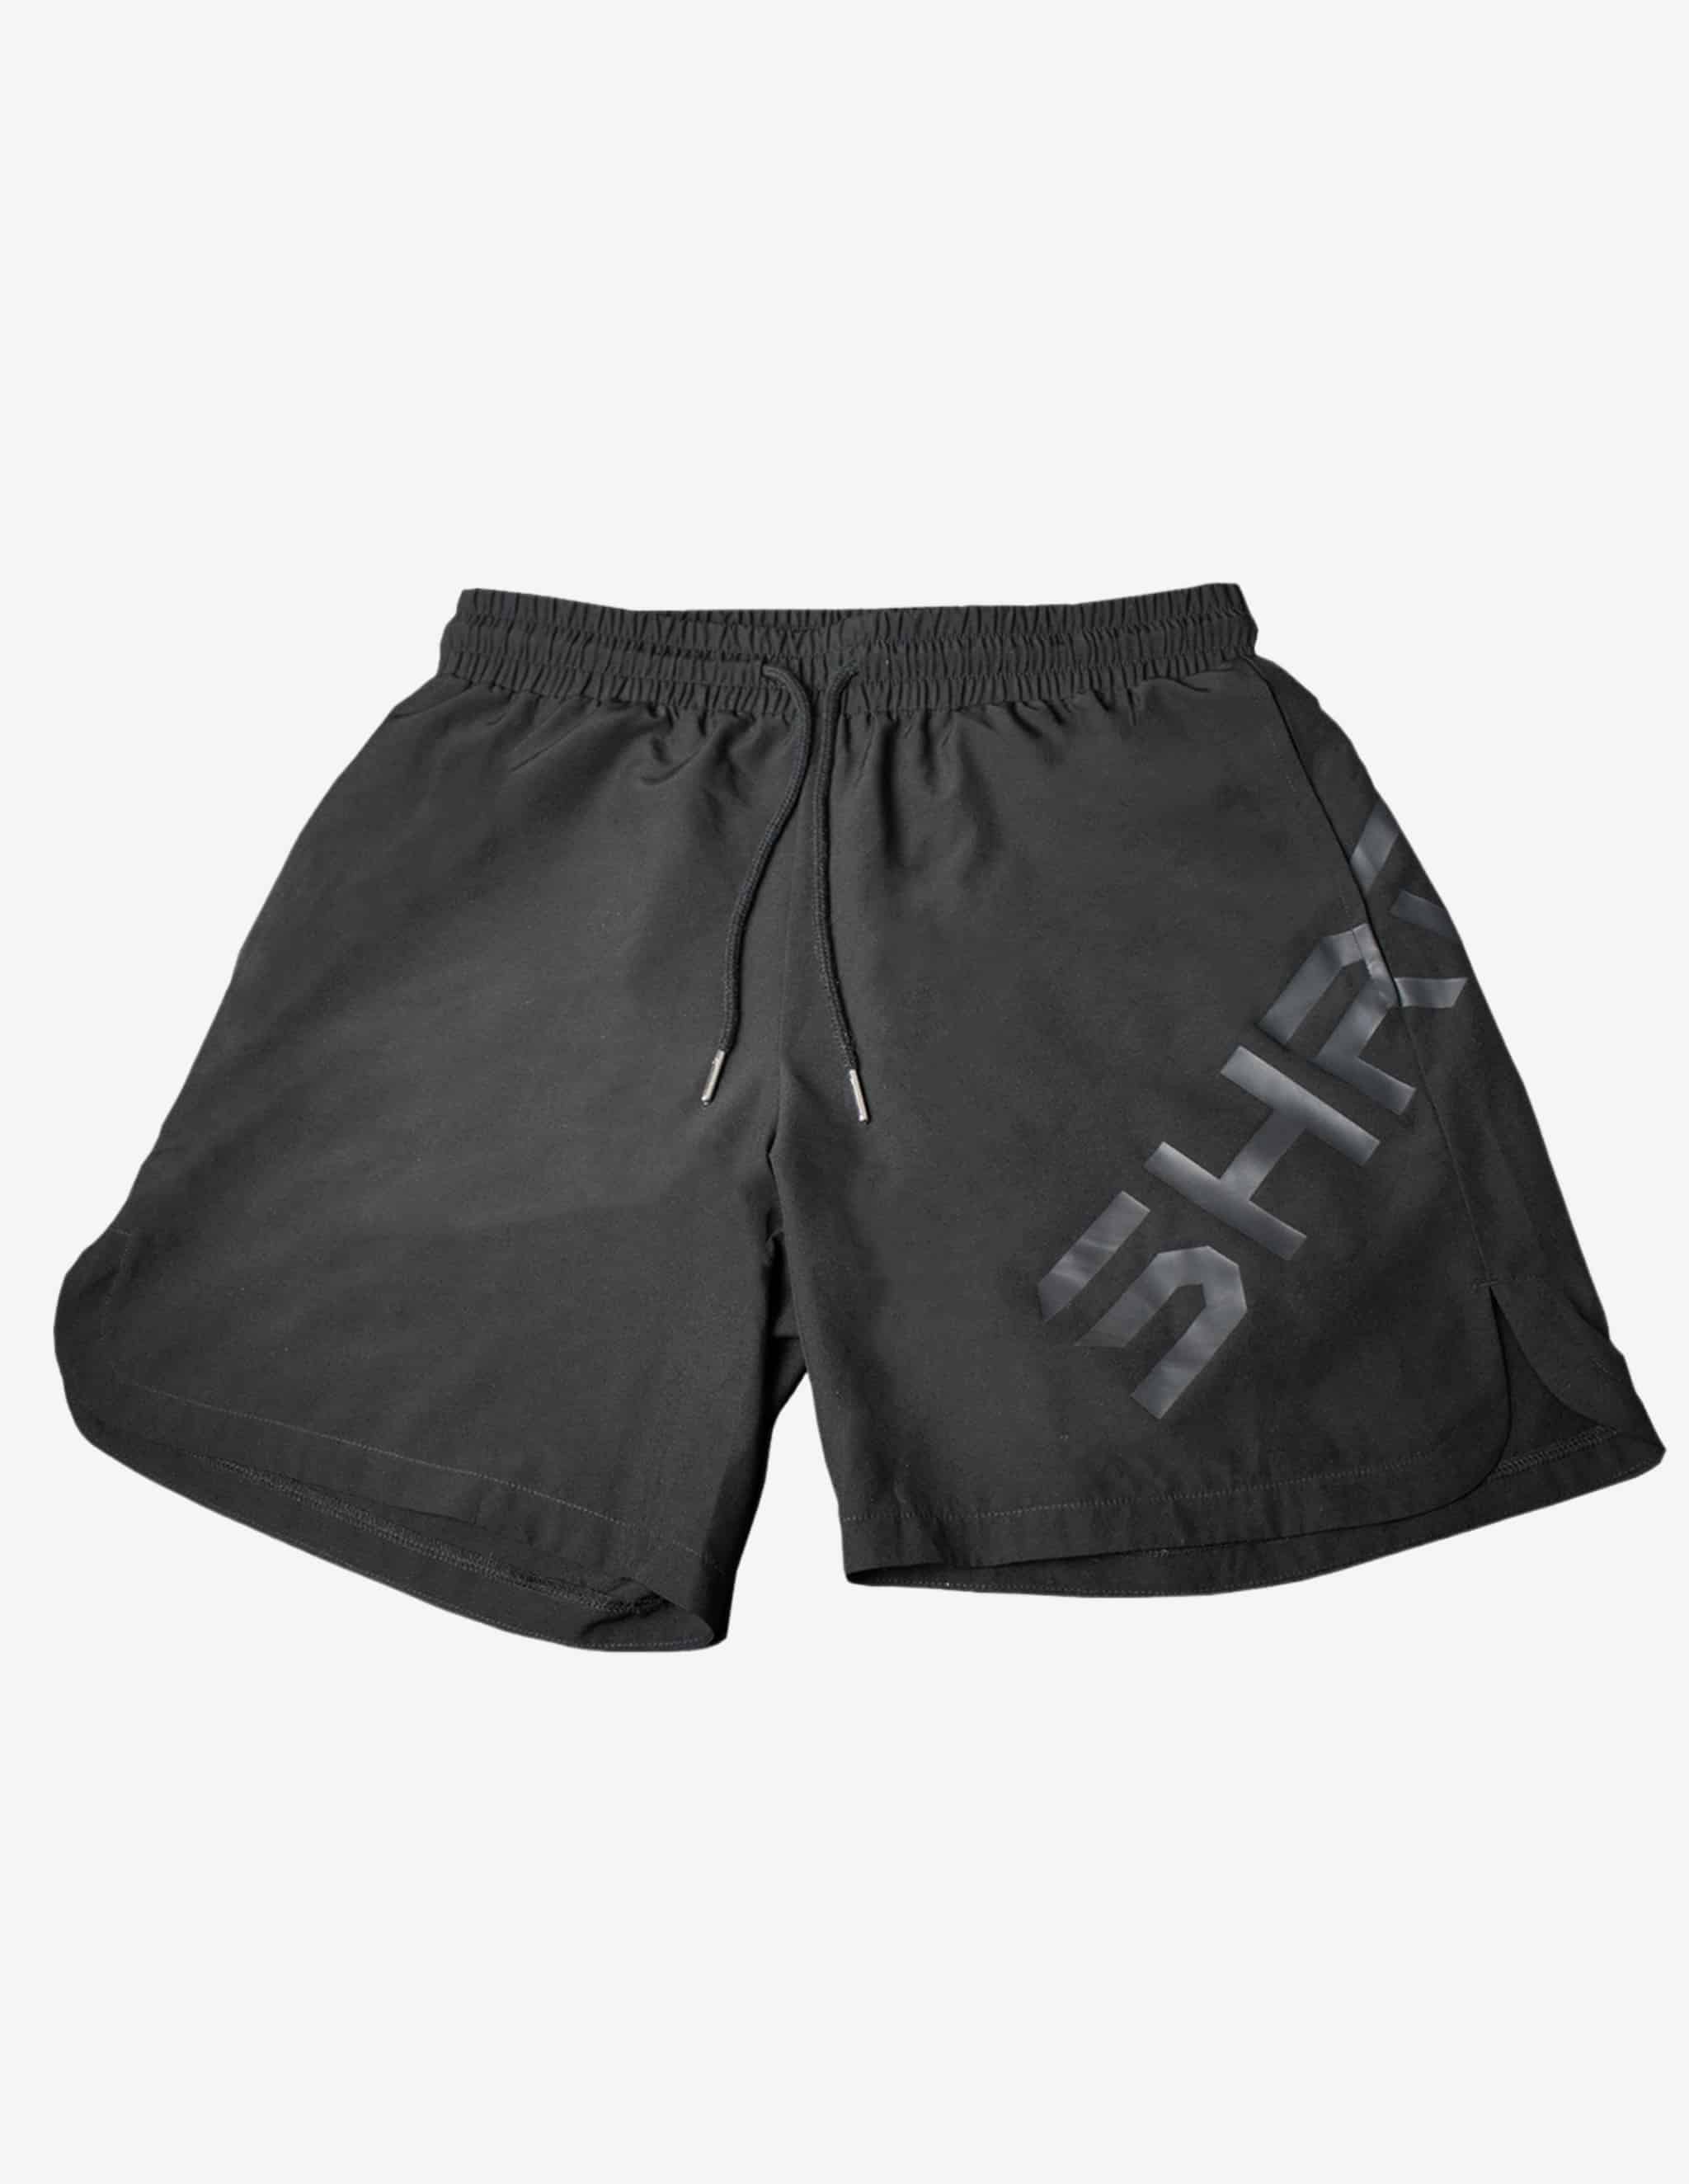 SHRDD Shorts Stealth Black-Shorts Man-Stay Shredded-Guru Muscle